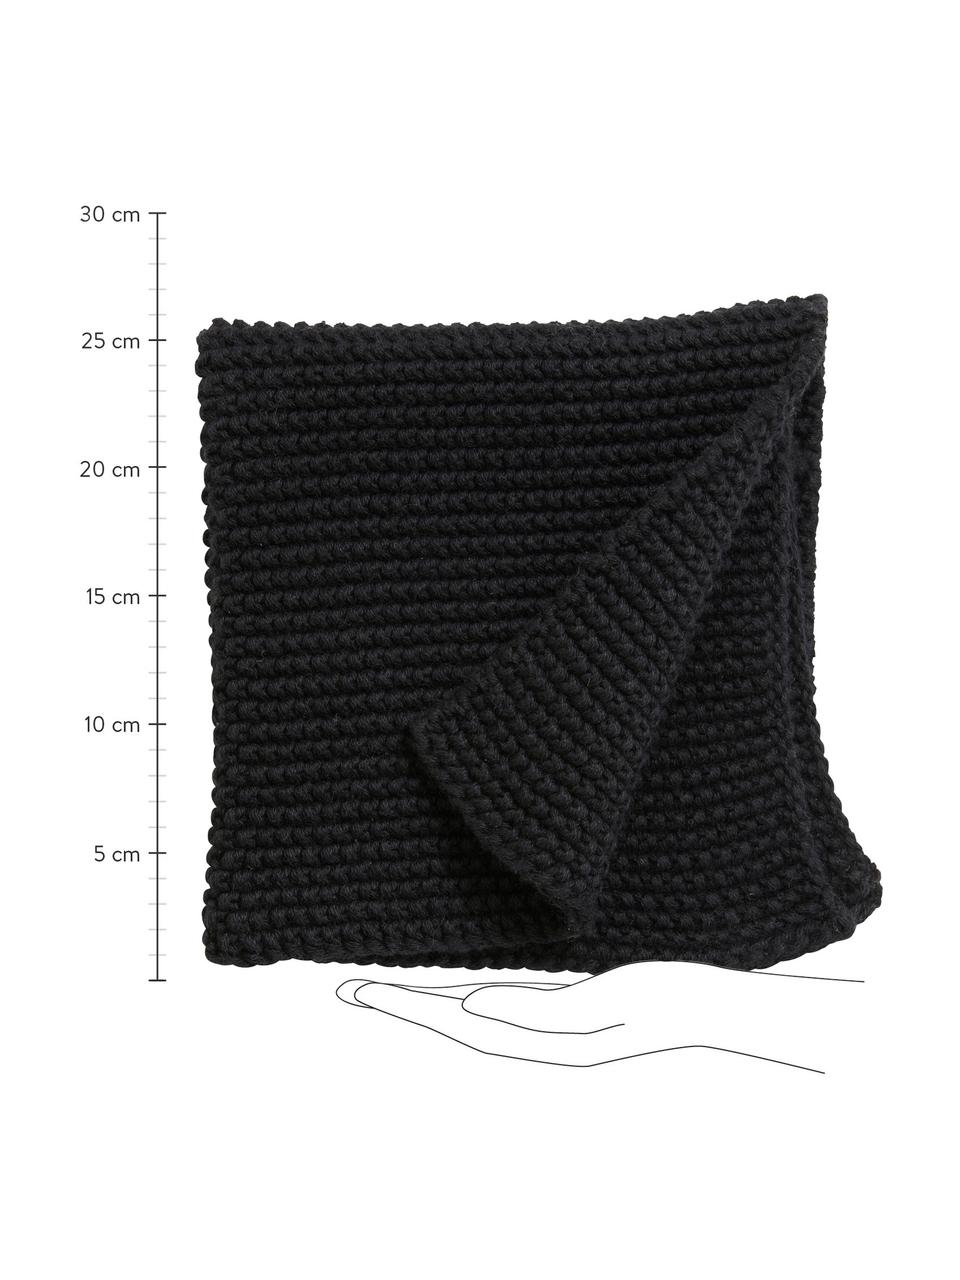 Gestrickte Spültücher Merga aus Bio-Baumwolle, 6 Stück, 100% aus GOTS-zertifizierter Bio-Baumwolle, Schwarz, 27 x 27 cm